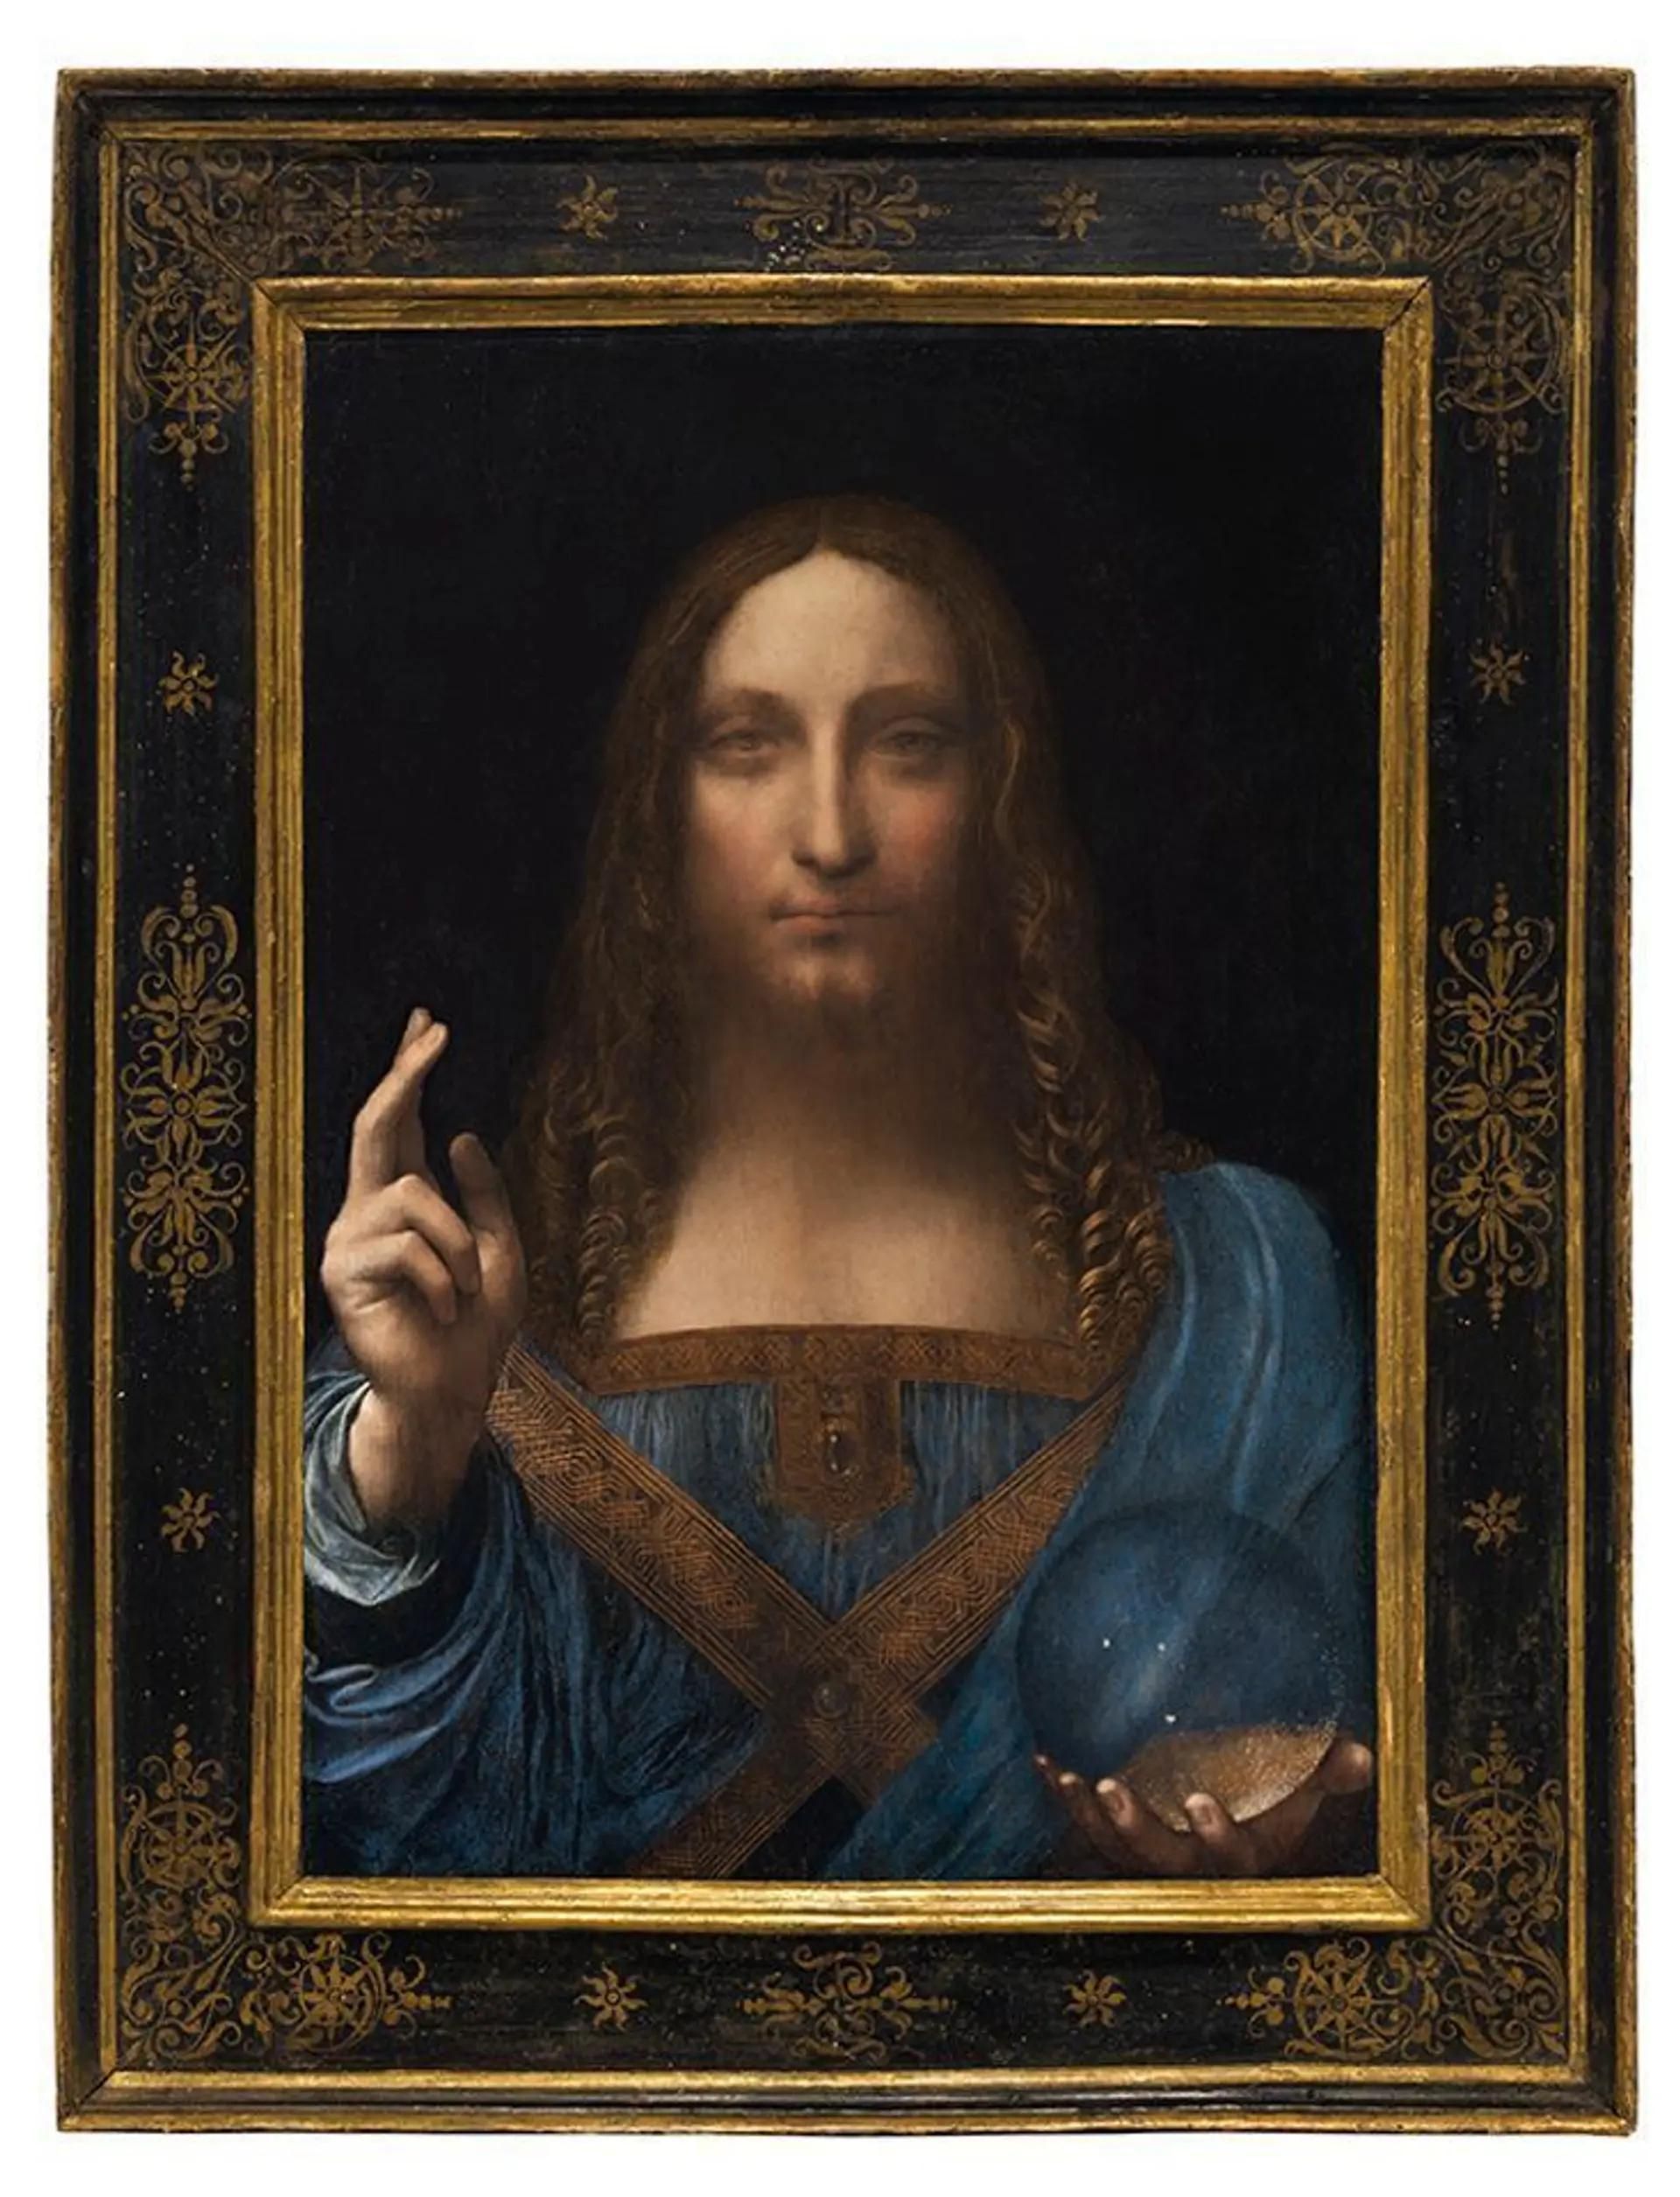 Salvator Mundi של לאונרדו, שנמכר בכריסטי'ס ב-2017 תמורת 450 מיליון דולר, סווג כ"עבודות מיוחסות, סדנה או מורשה ומפוקחת על ידי לאונרדו", בקטלוג התערוכה של פראדו